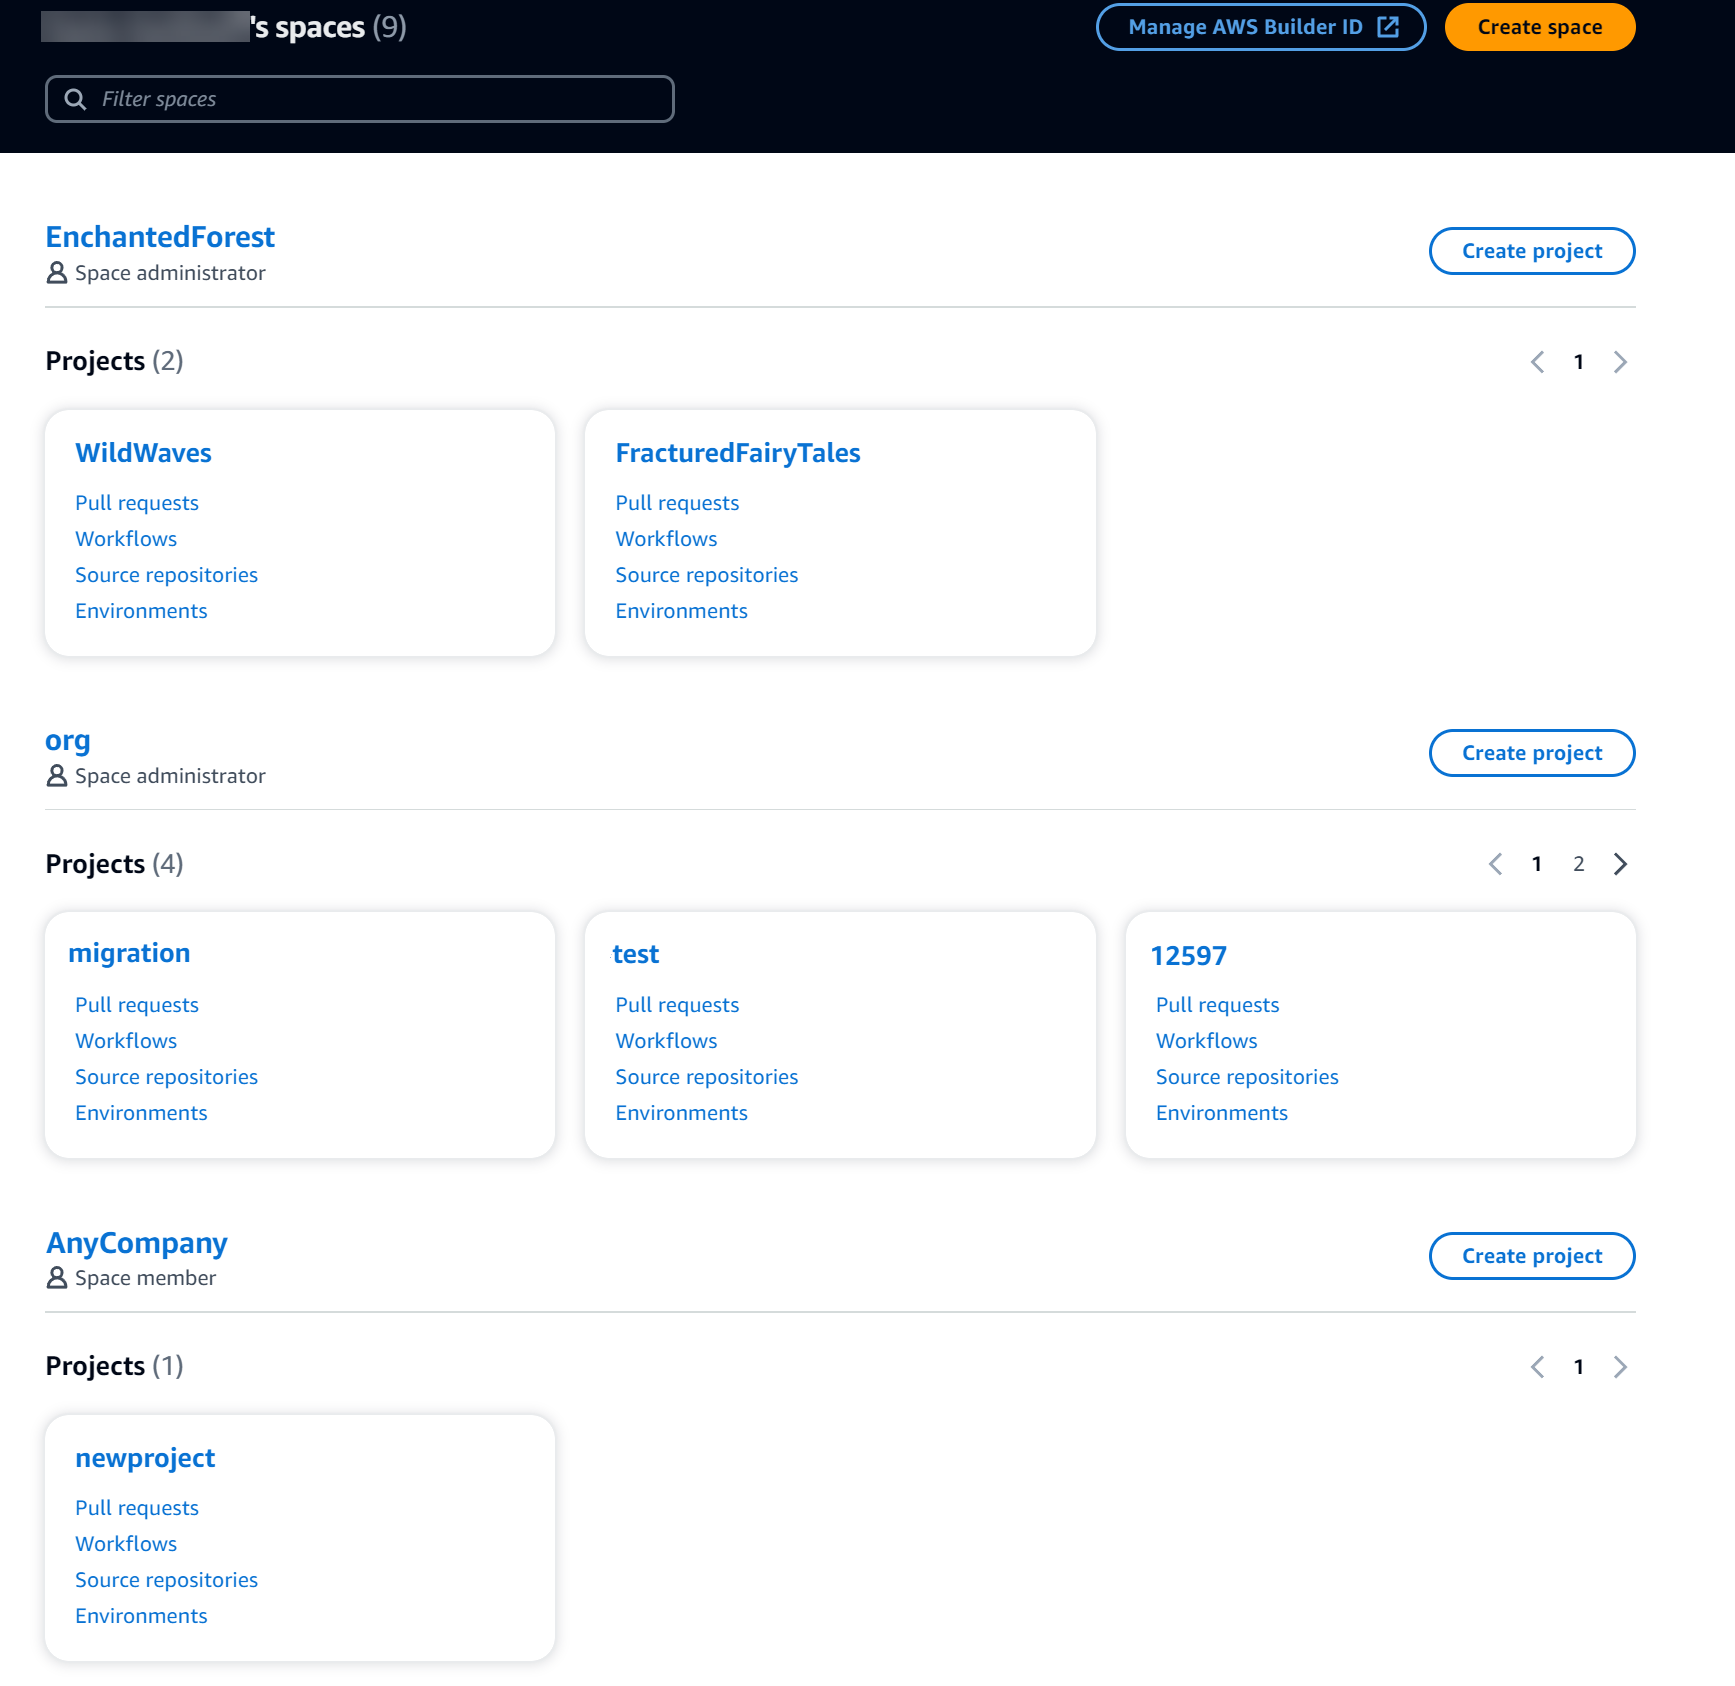 La página de inicio del usuario muestra todos los espacios y proyectos de los que es miembro